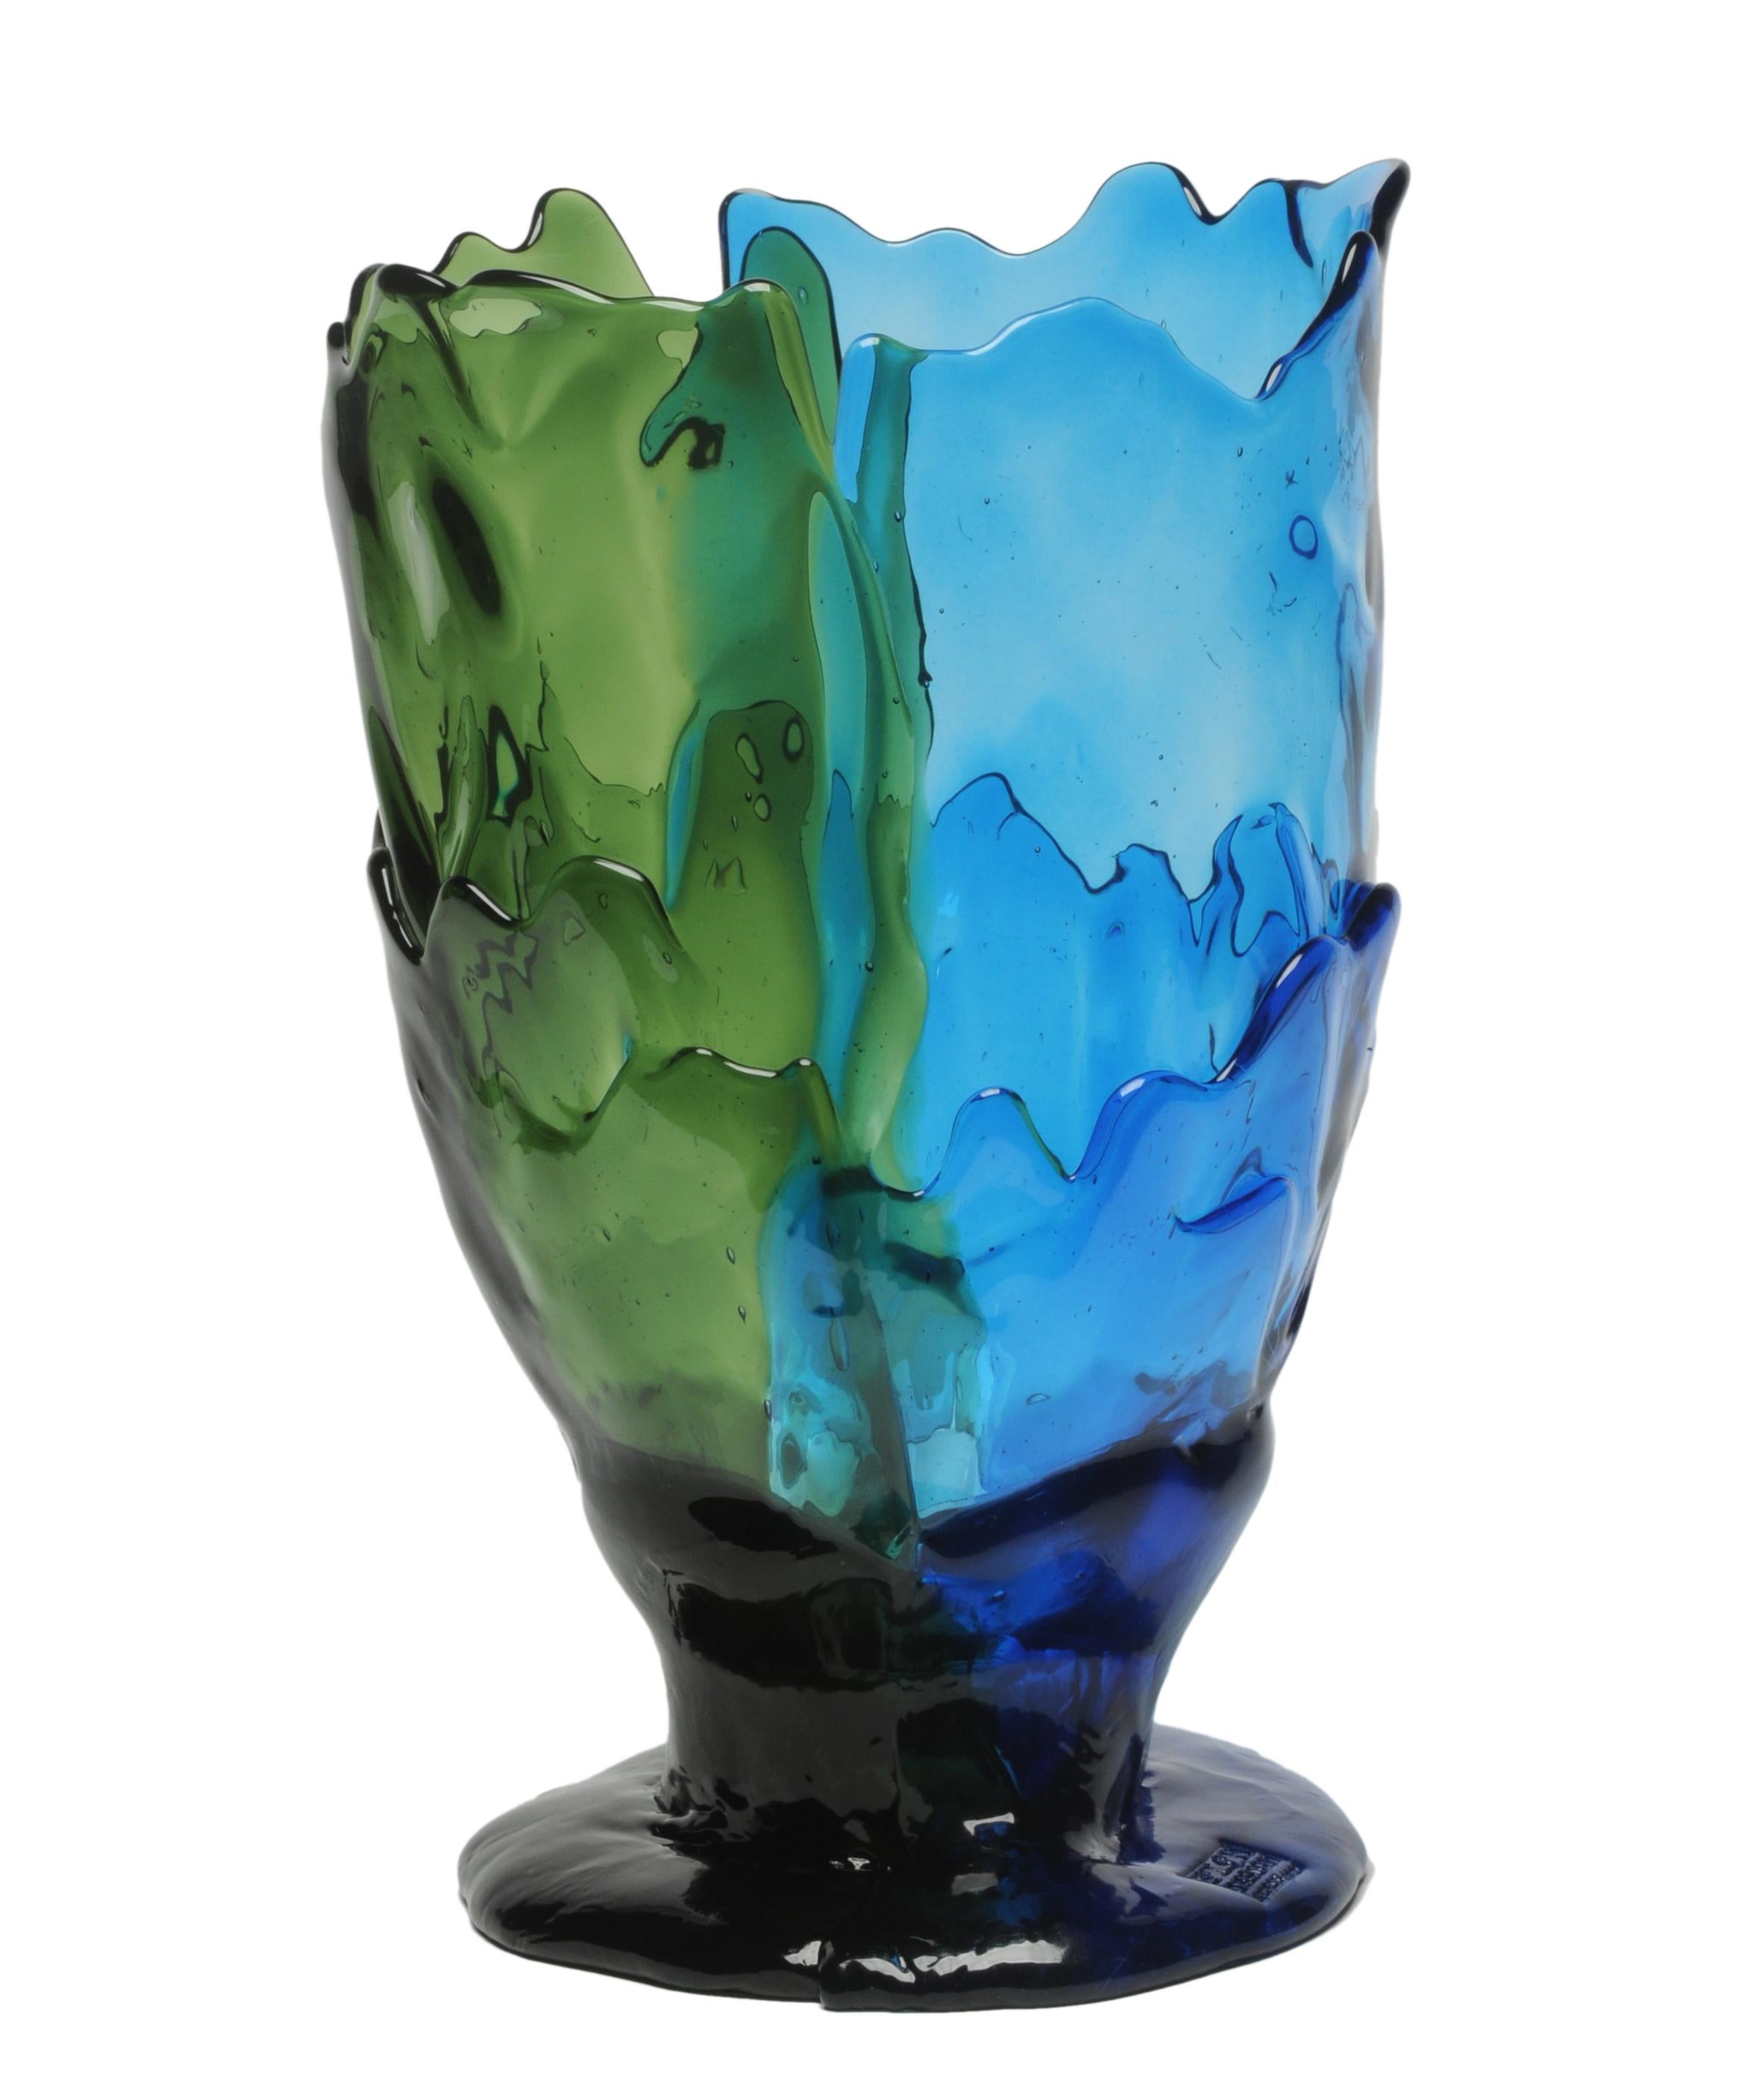 Vase Twin-C, klar, grün und blau.

Vase aus weichem Harz, entworfen von Gaetano Pesce im Jahr 1995 für die Kollektion Fish Design.

Maße: XL - Ø 30cm x H 56cm

Andere Größen verfügbar.

Farben: klar, grün und blau.

Vase aus weichem Harz,